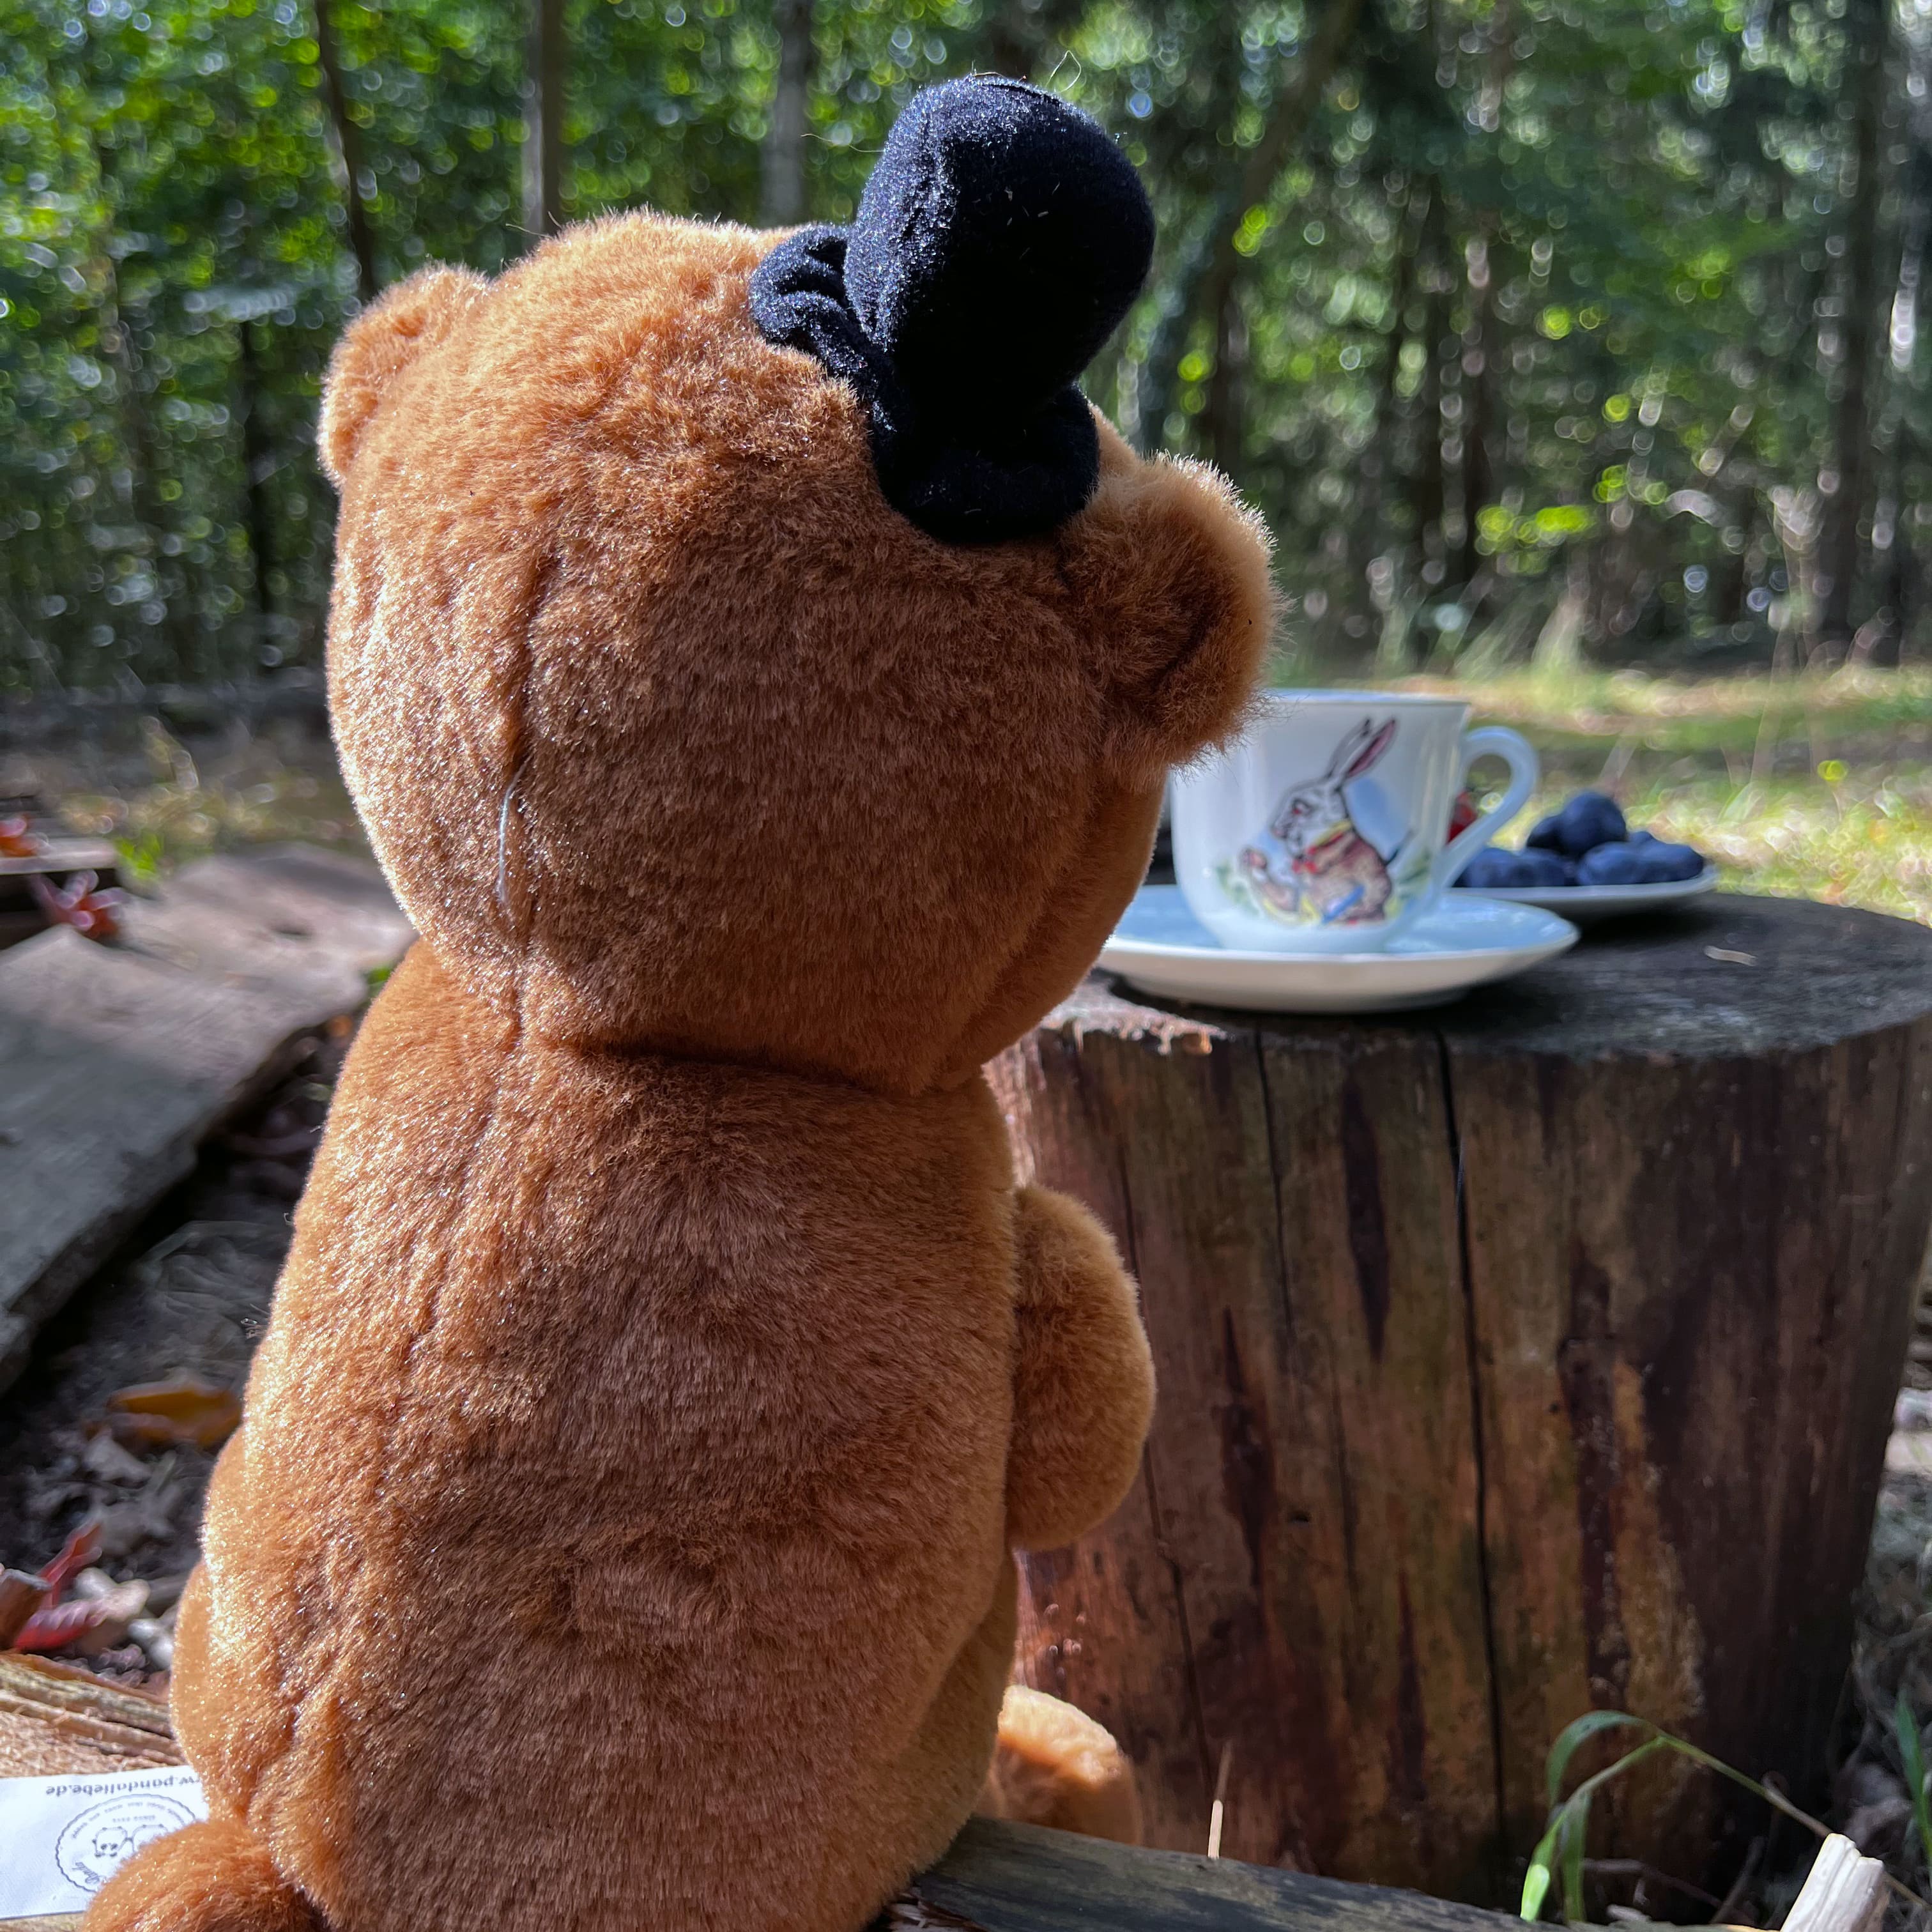 Kuscheltier Bär mit Hut und Fliege - Geschenk Zylinder Teddy Spielzeug Stofftier